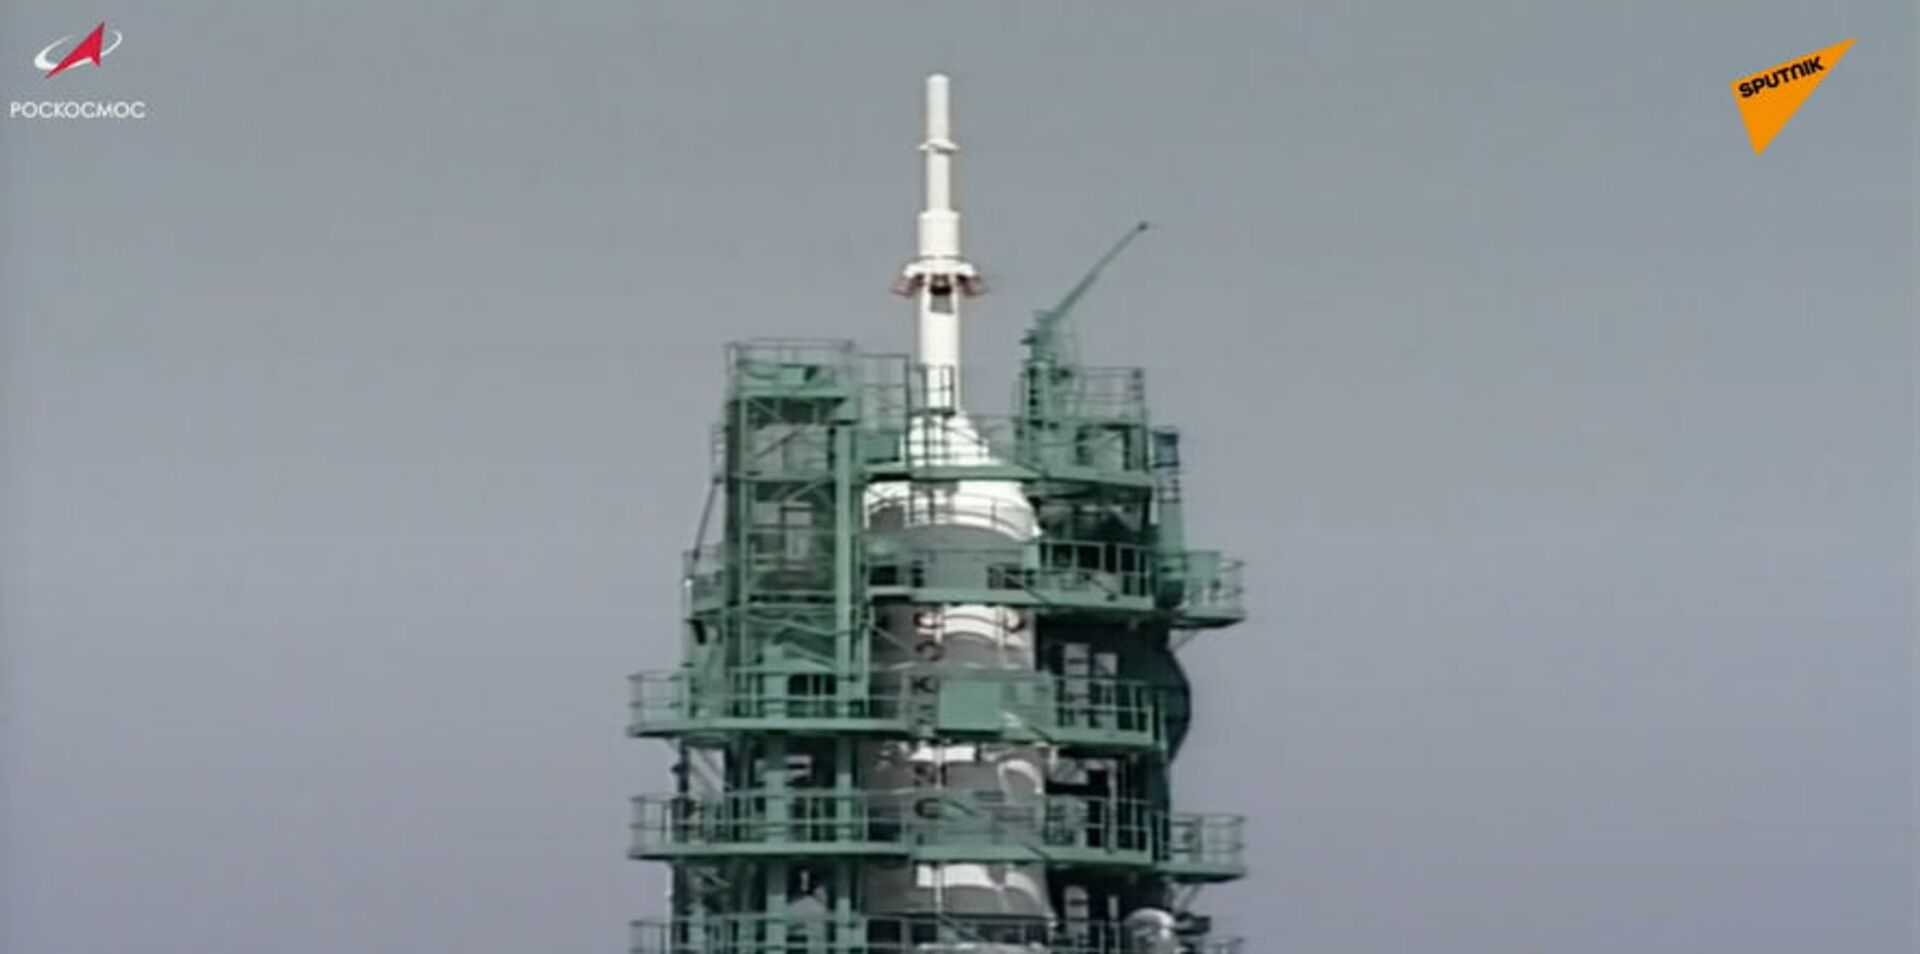 LIVE: Запуск космического корабля Союз МС-18 с экипажем МКС-65 с космодрома Байконур - Sputnik Молдова, 1920, 09.04.2021